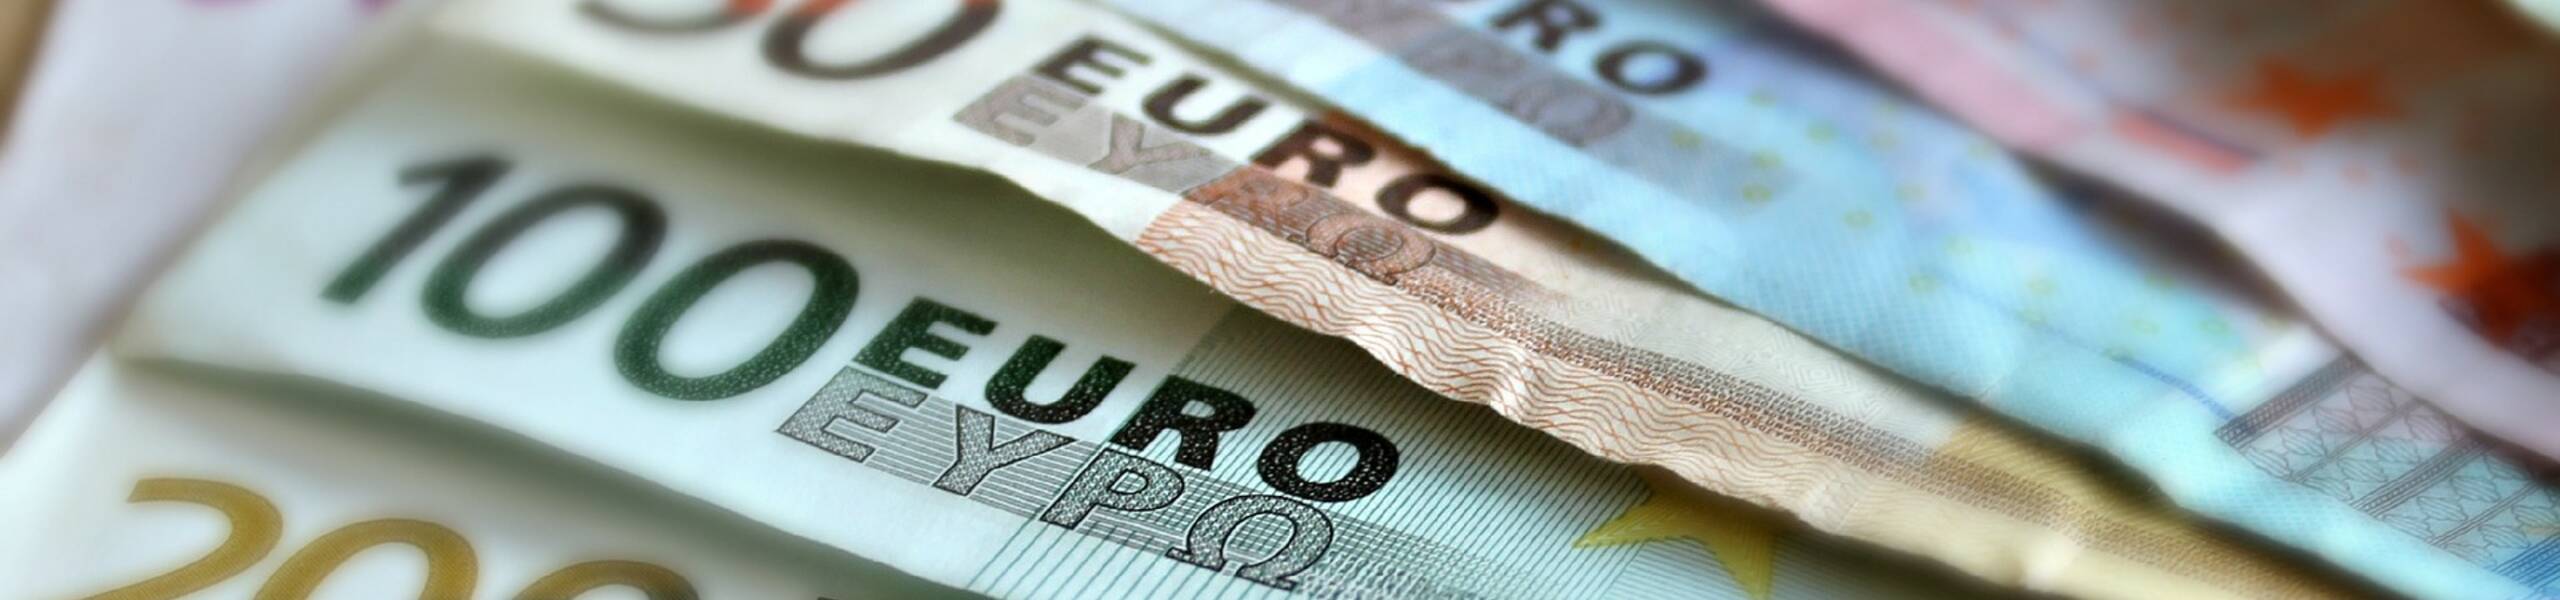 EUR/USD comenzando una corrección alcista